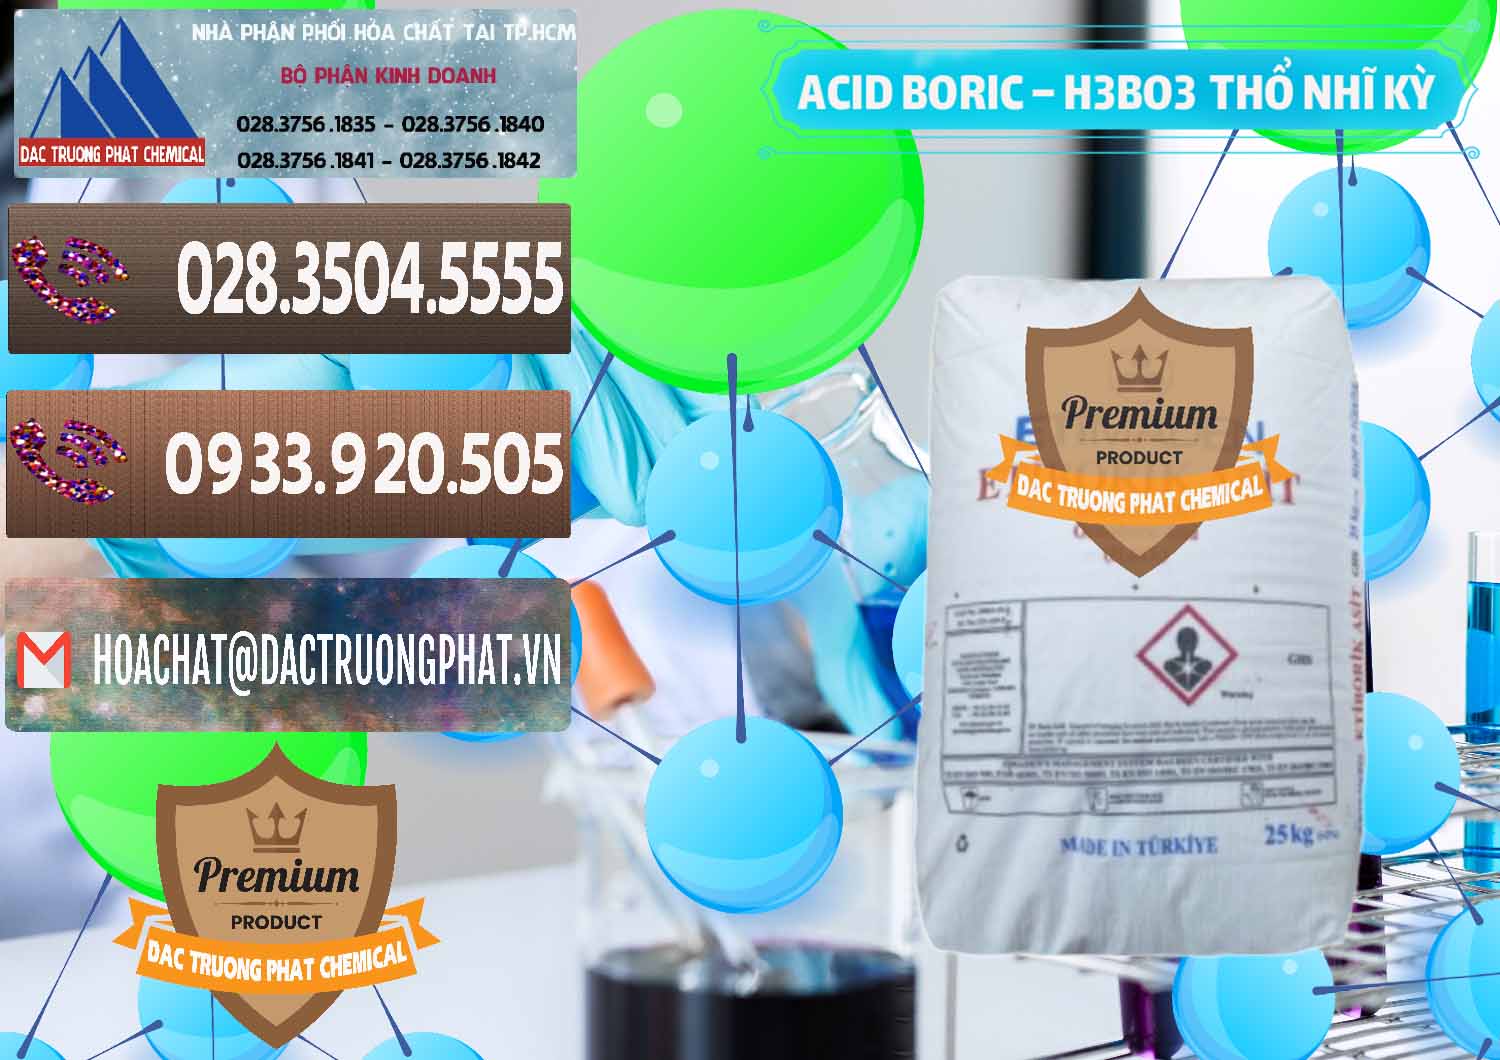 Chuyên bán - cung ứng Acid Boric – Axit Boric H3BO3 Etimaden Thổ Nhĩ Kỳ Turkey - 0369 - Cty kinh doanh và phân phối hóa chất tại TP.HCM - hoachatviet.net